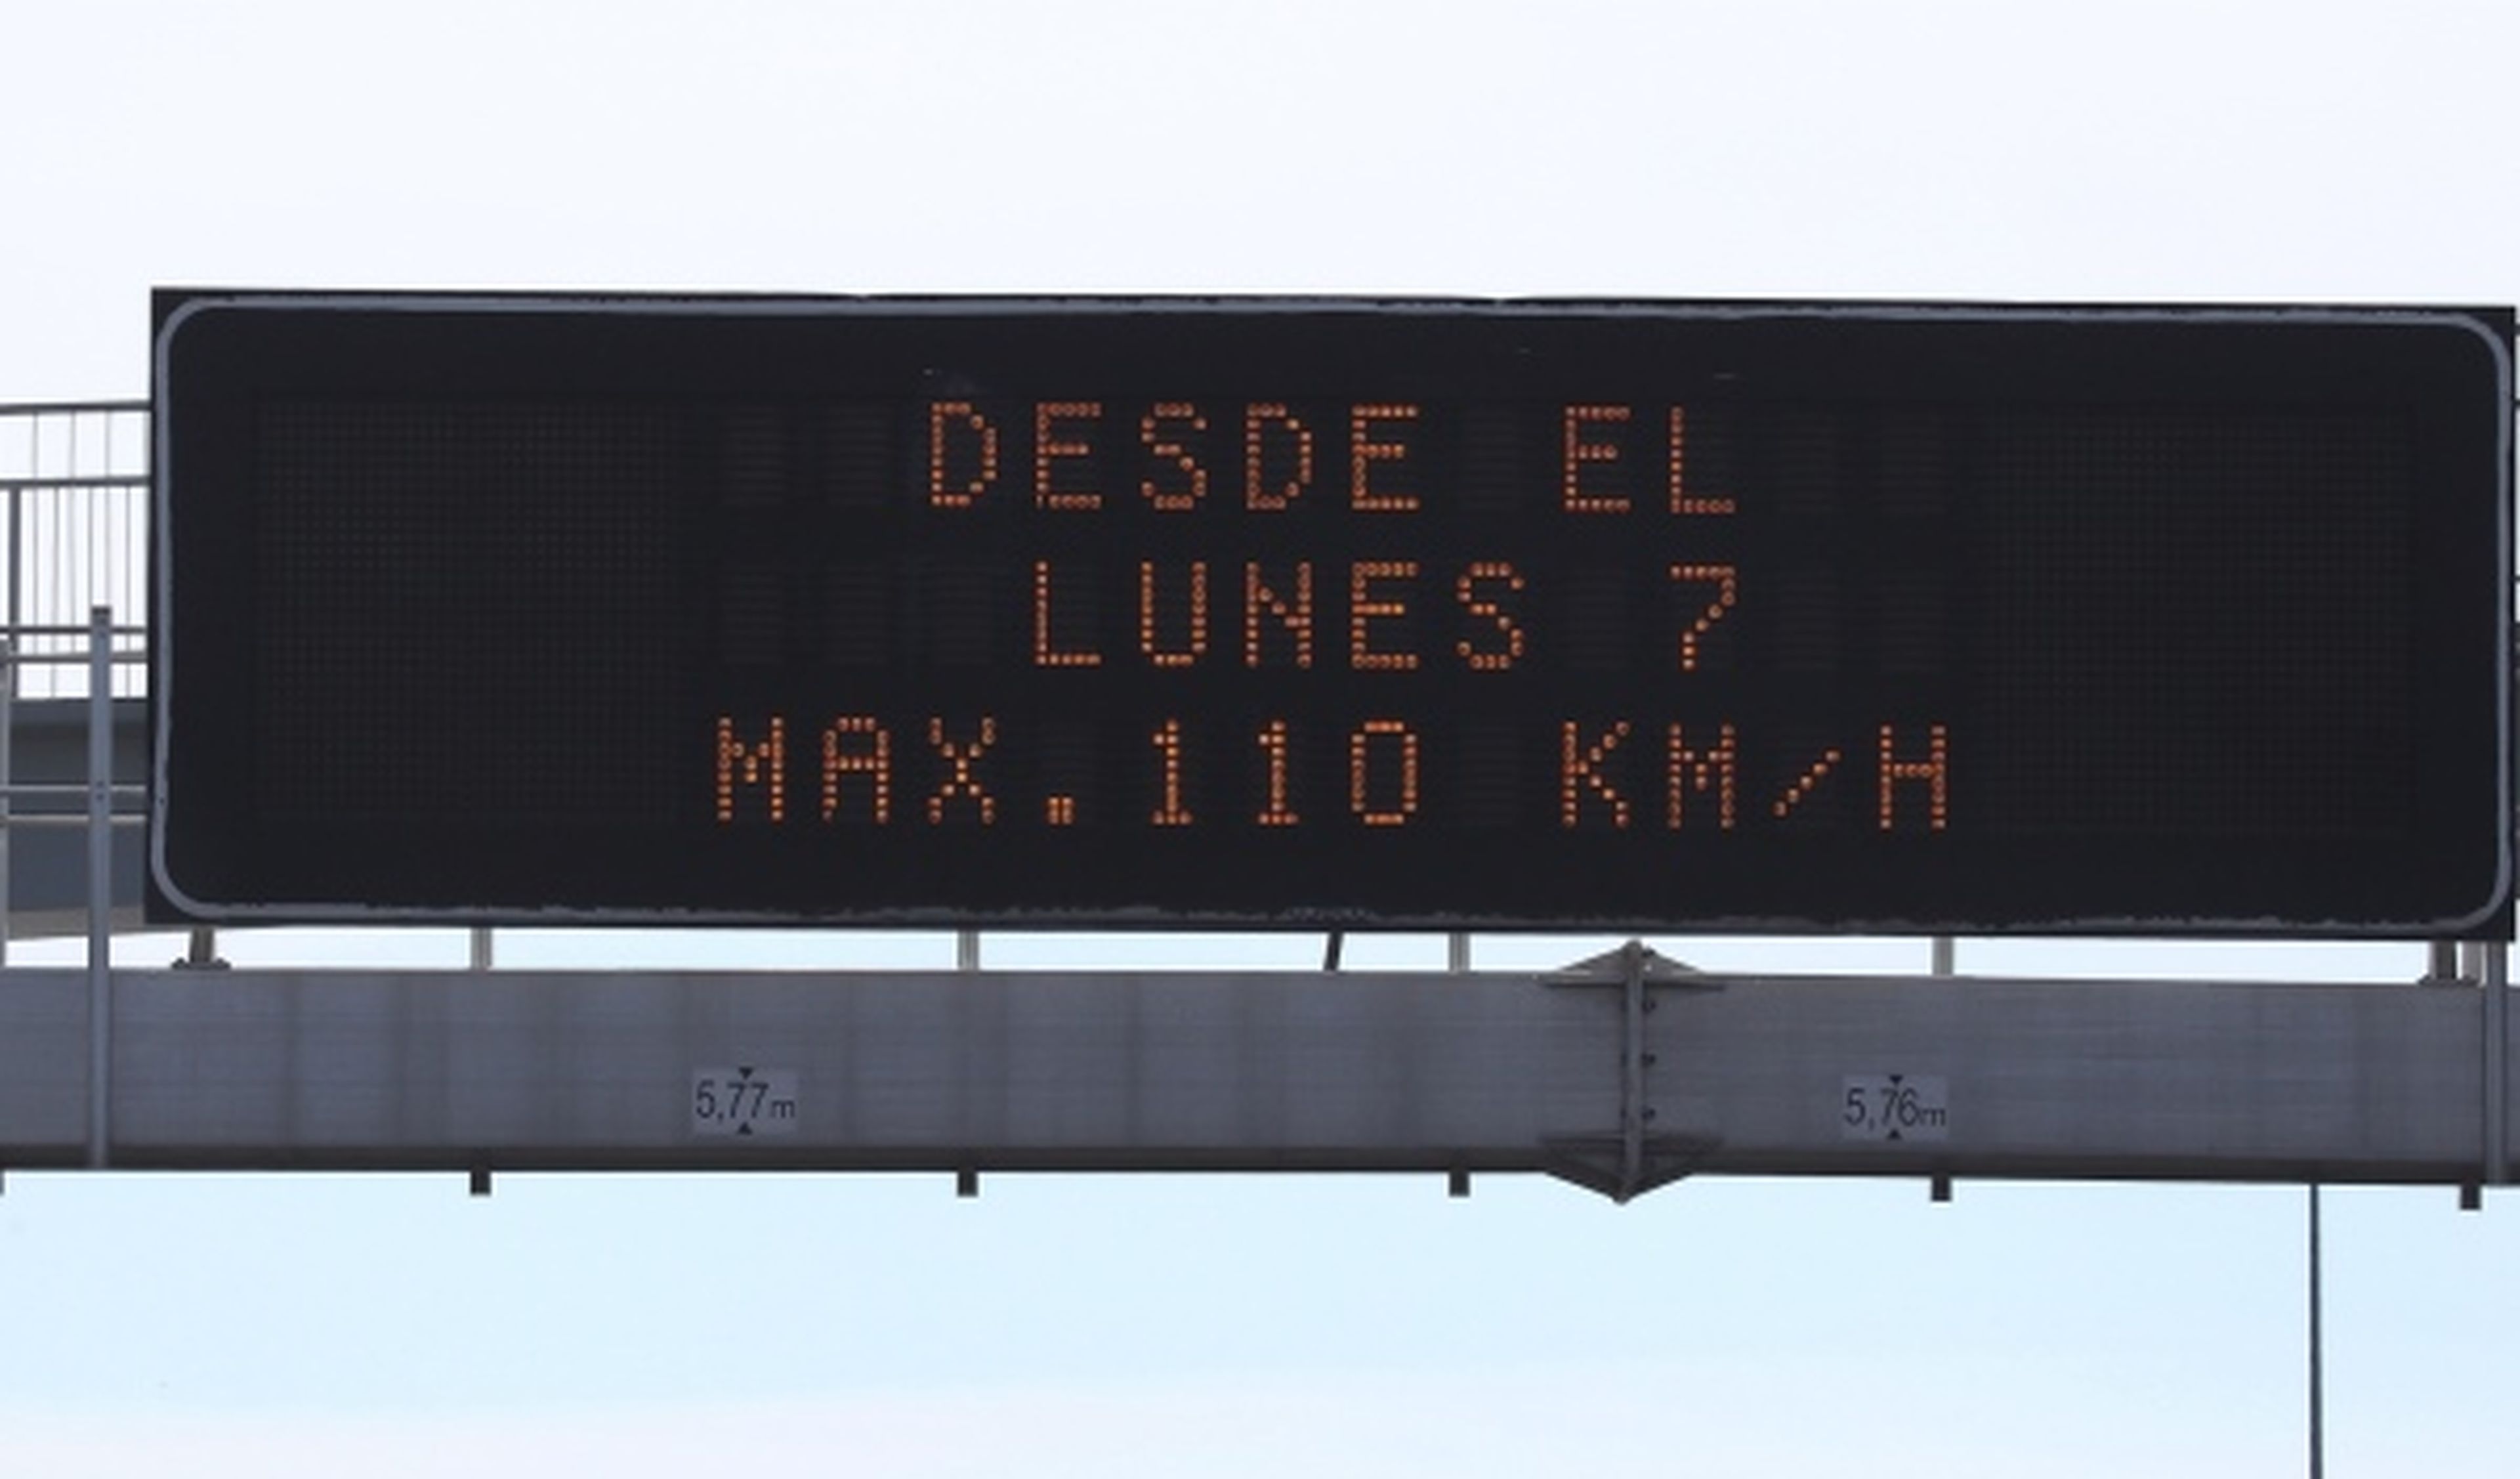 El Supremo rechaza suspender el límite de 110 km/h